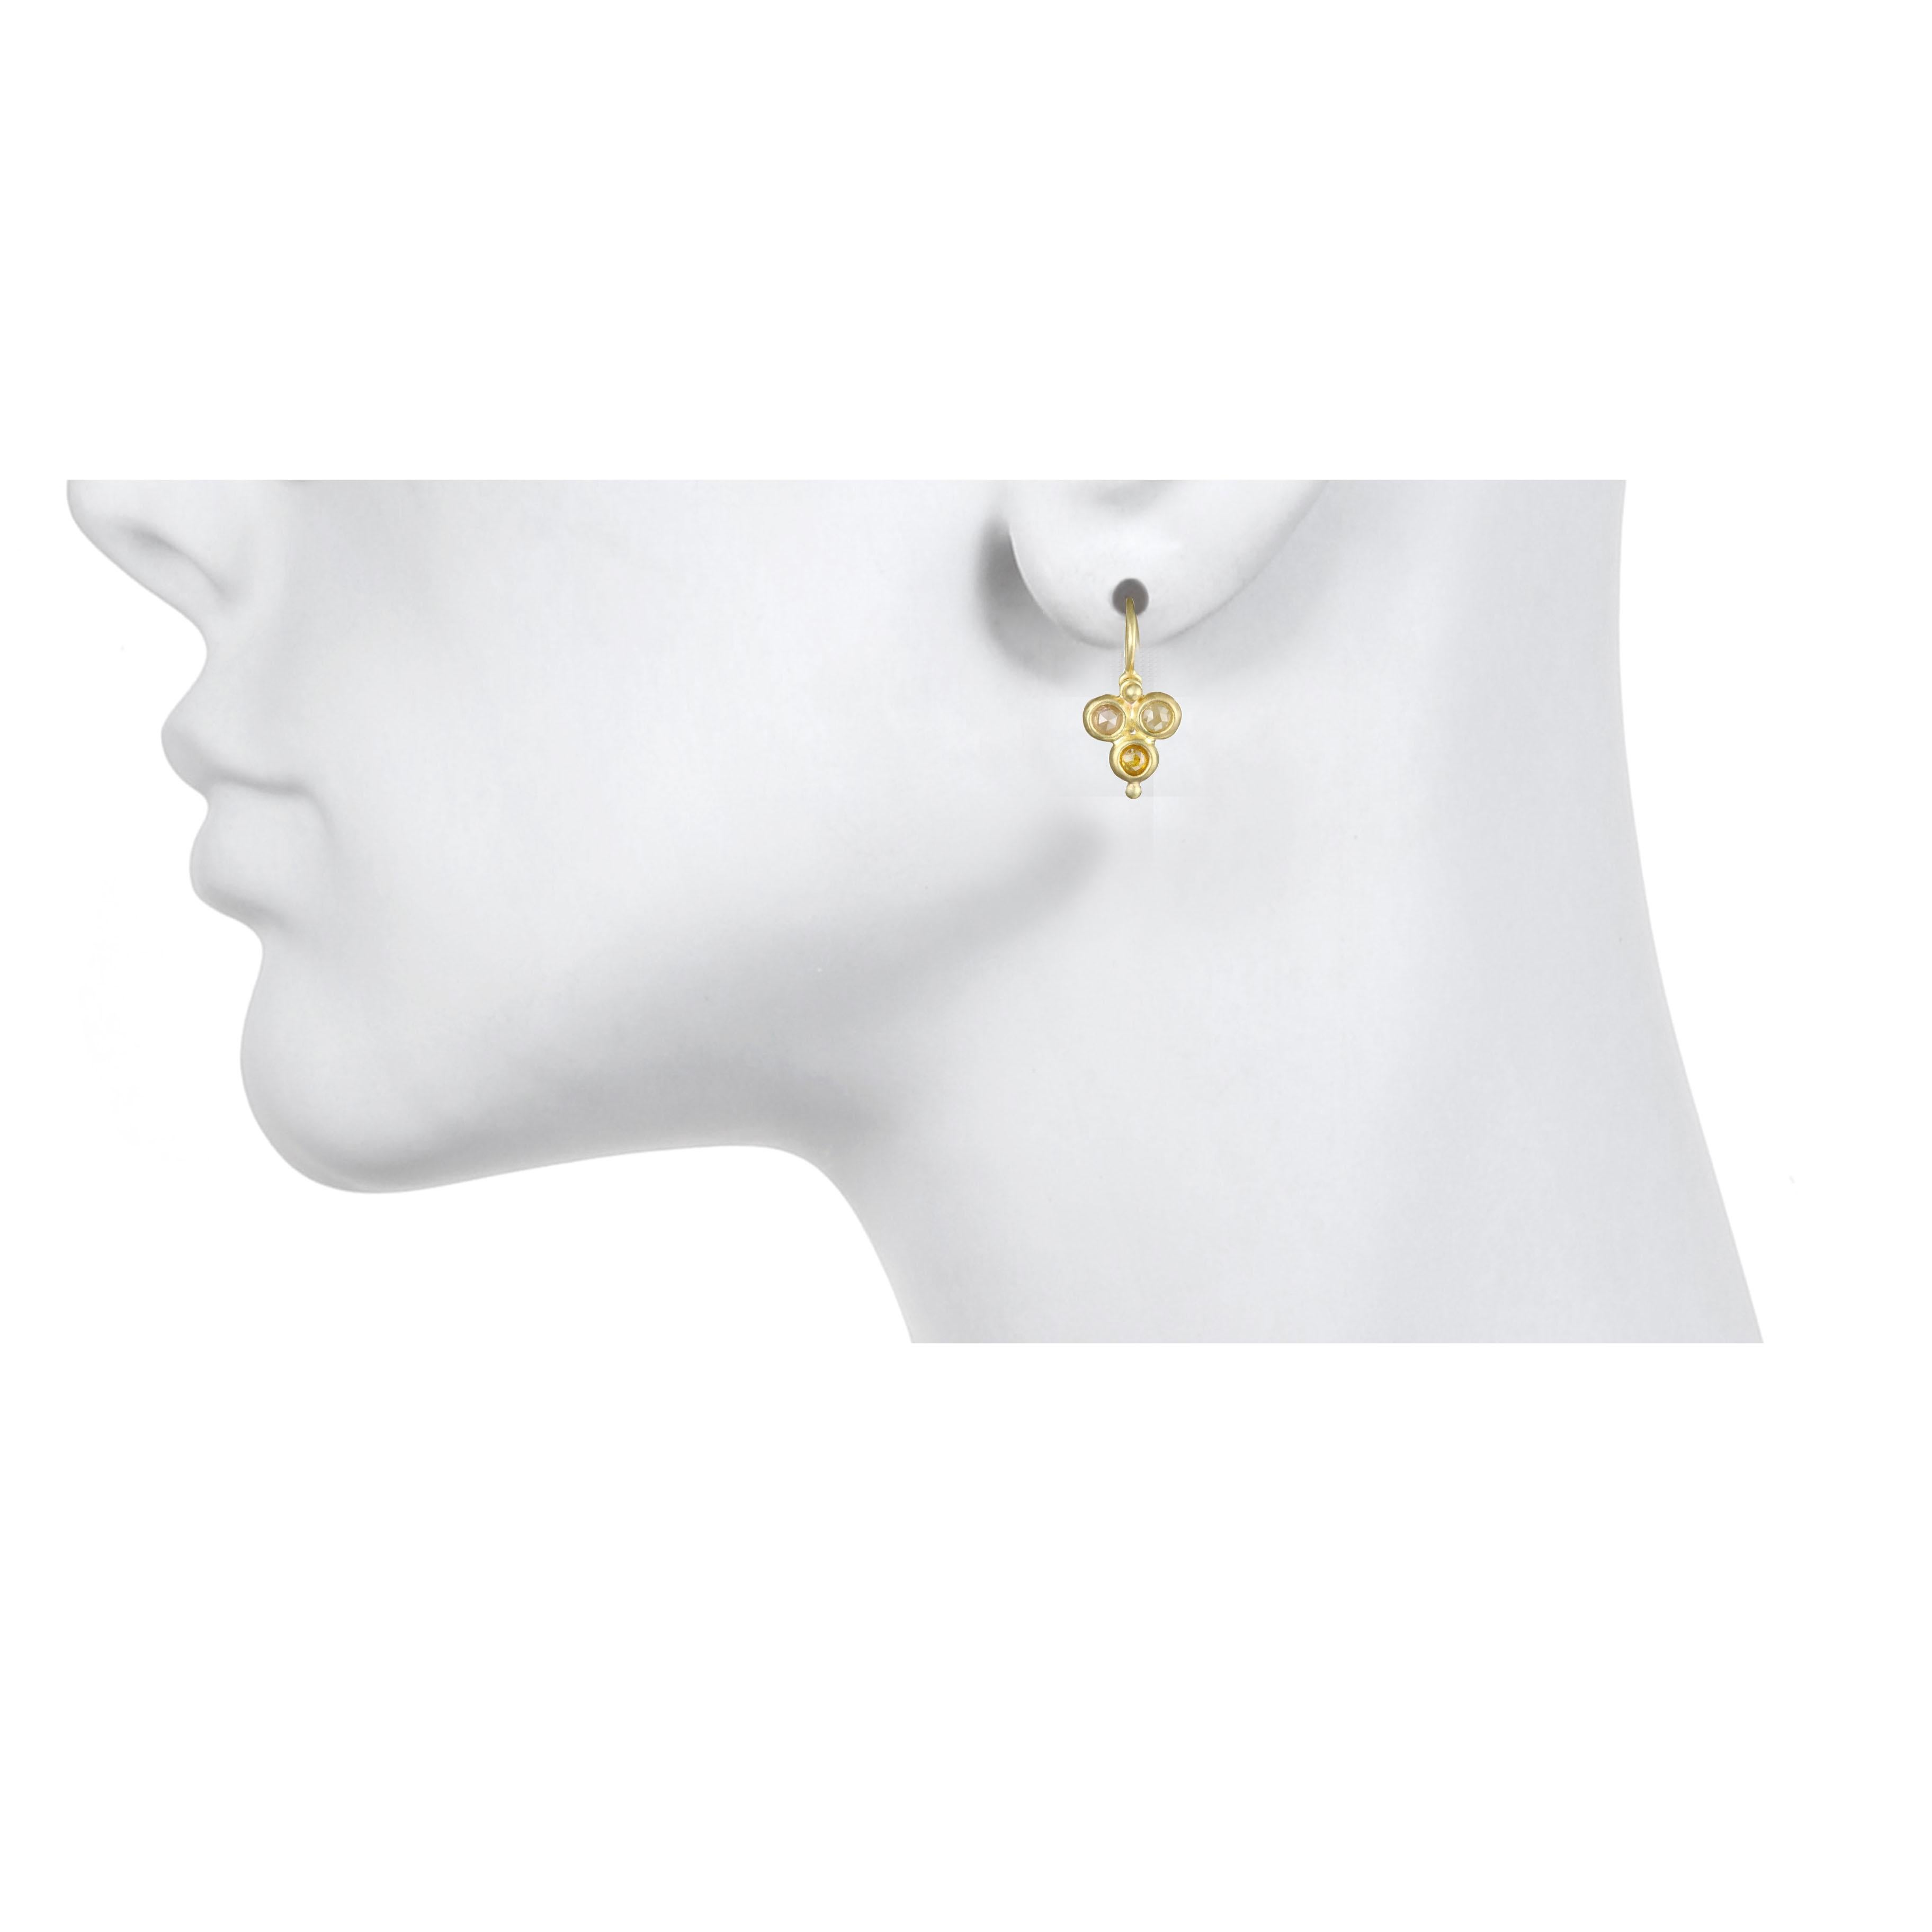 Boucles d'oreilles en diamant brut à triple chaton avec fils d'oreille articulés en granulation.
Chaque paire est fabriquée à la main et est unique. Les nuances naturelles et subtiles des diamants bruts sont complétées par l'éclat chaud de l'or 18k